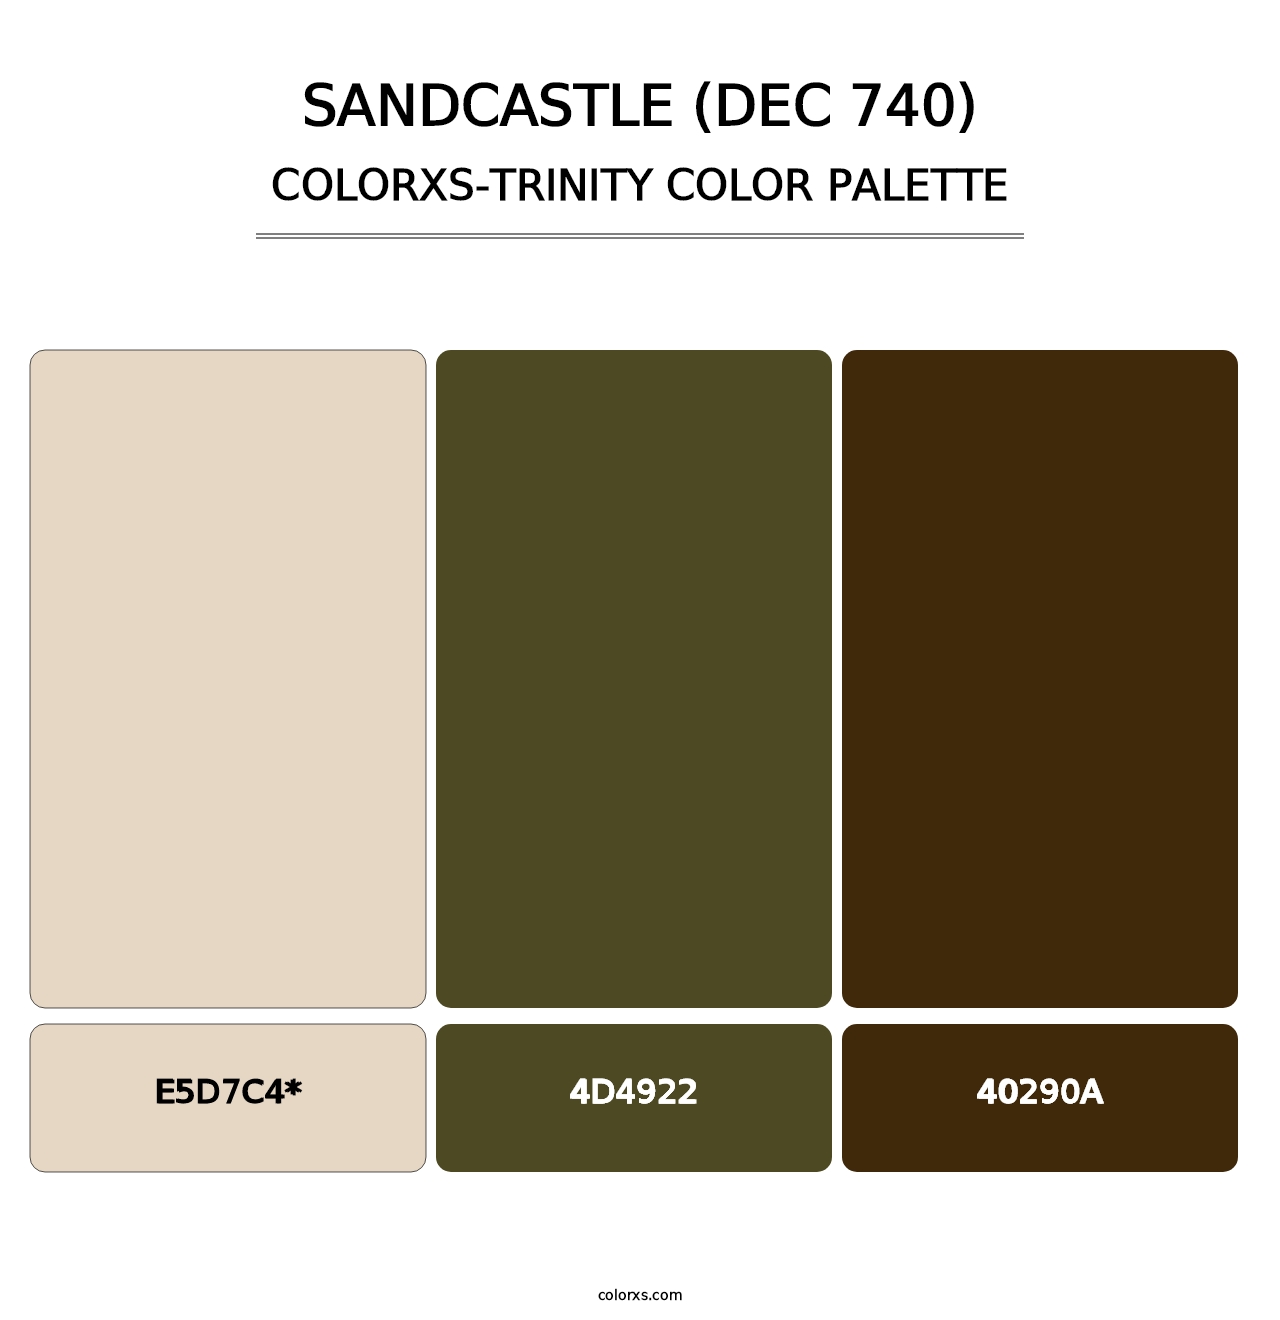 Sandcastle (DEC 740) - Colorxs Trinity Palette